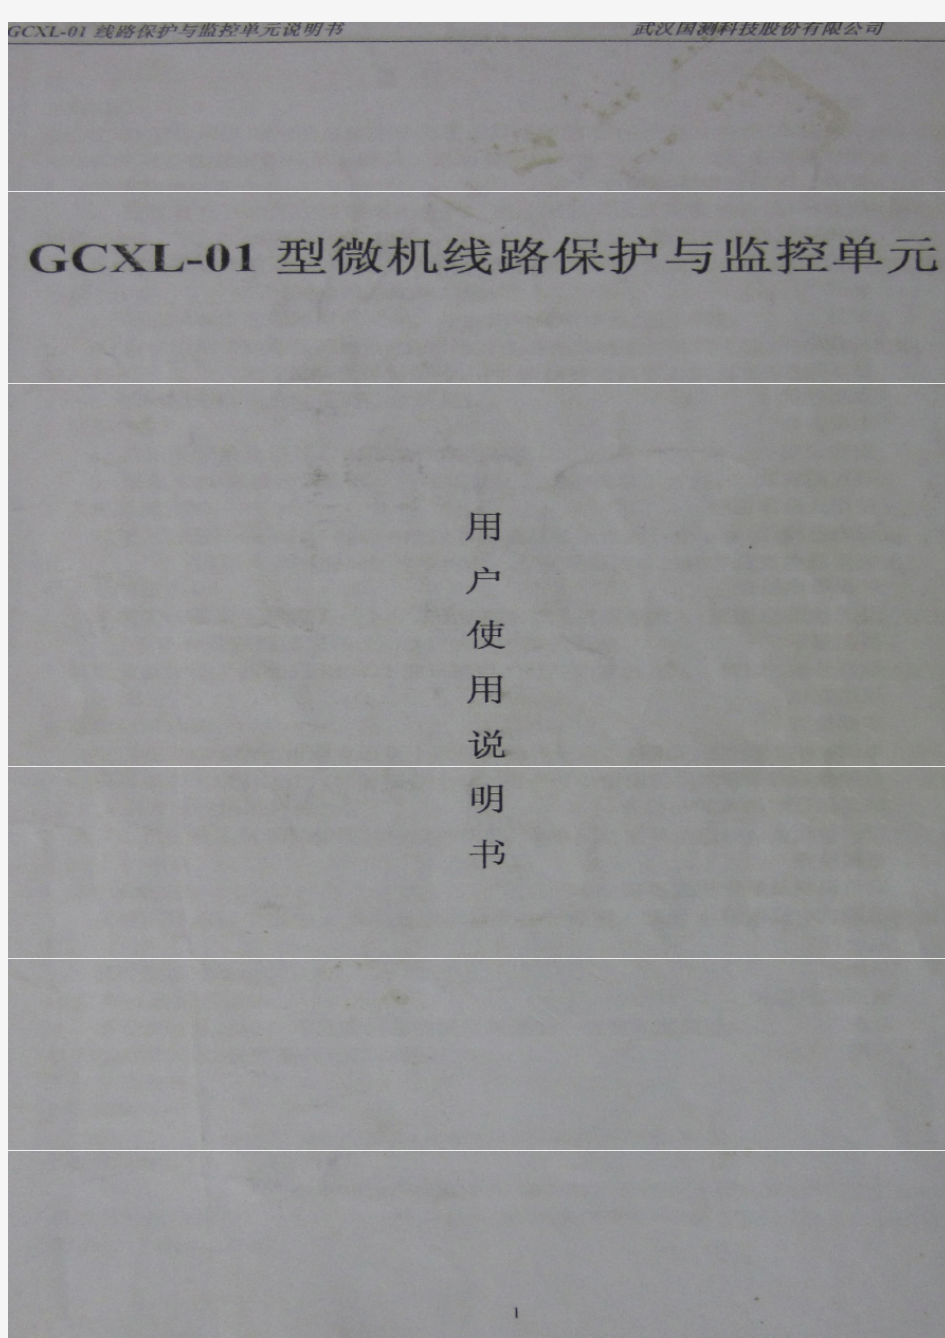 GCXL—01微机线路保护与监控单元